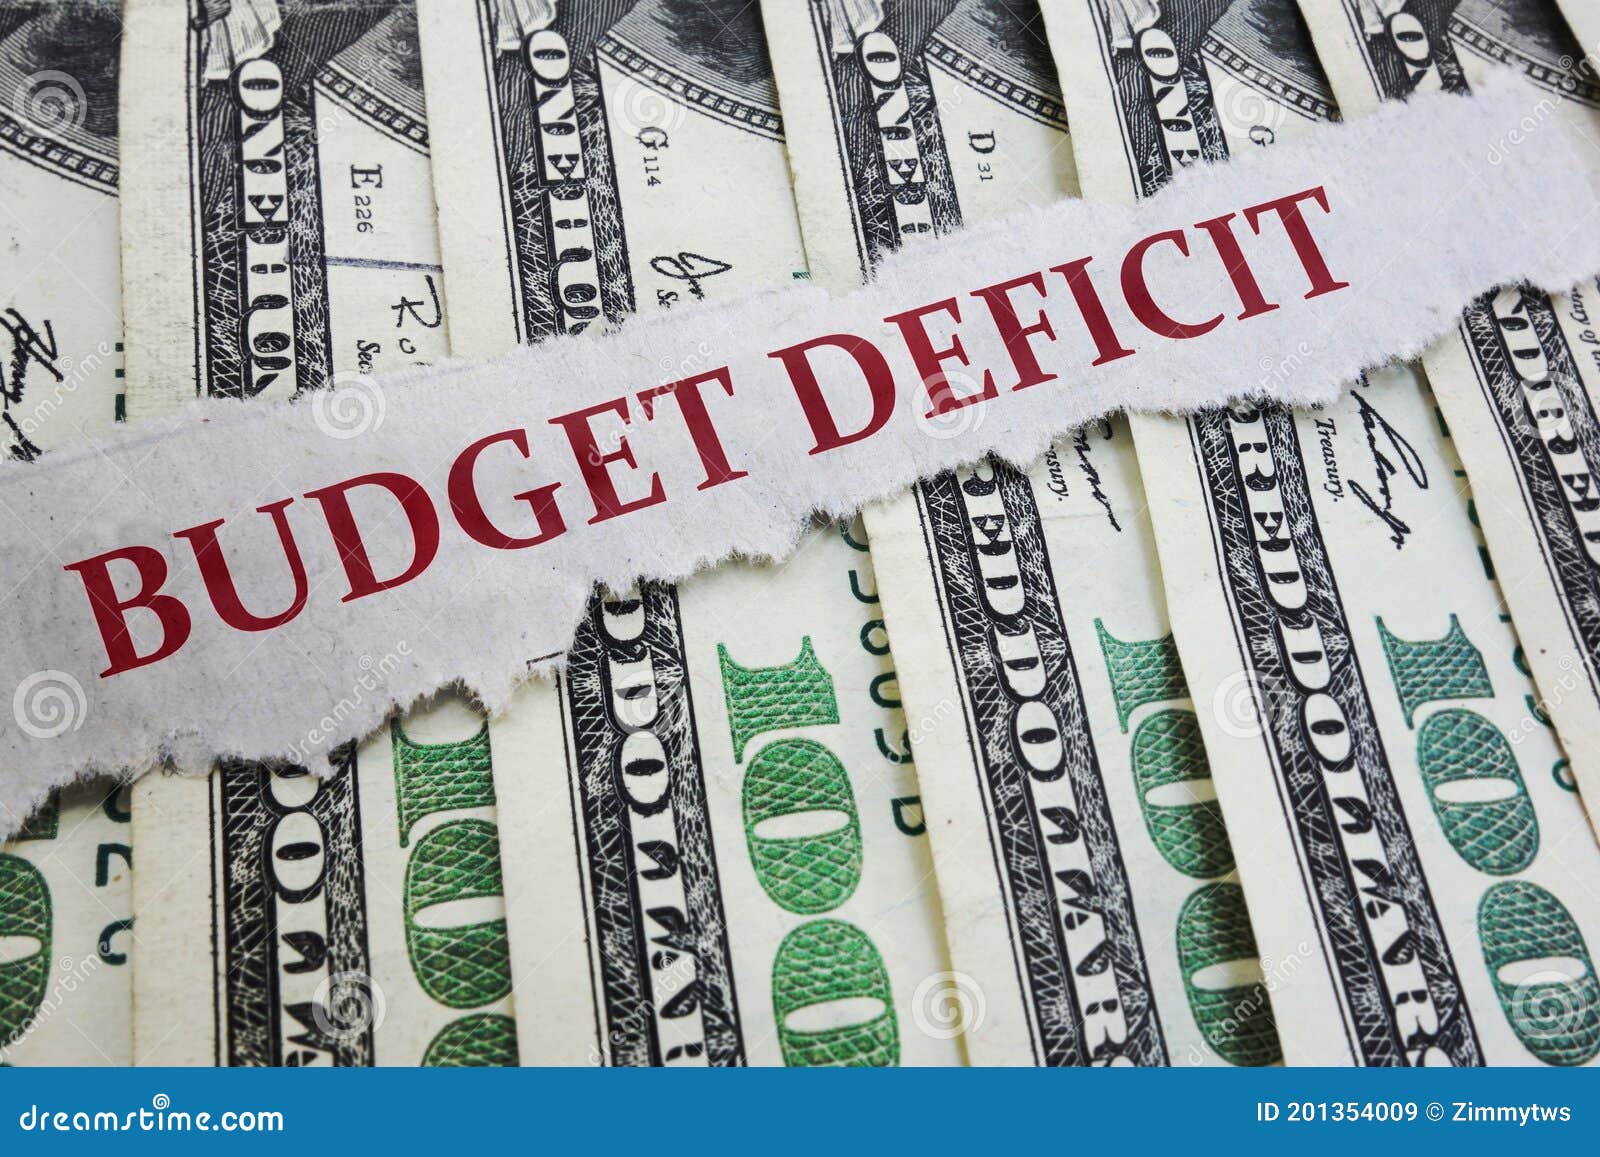 budget deficit newspaper headline on money